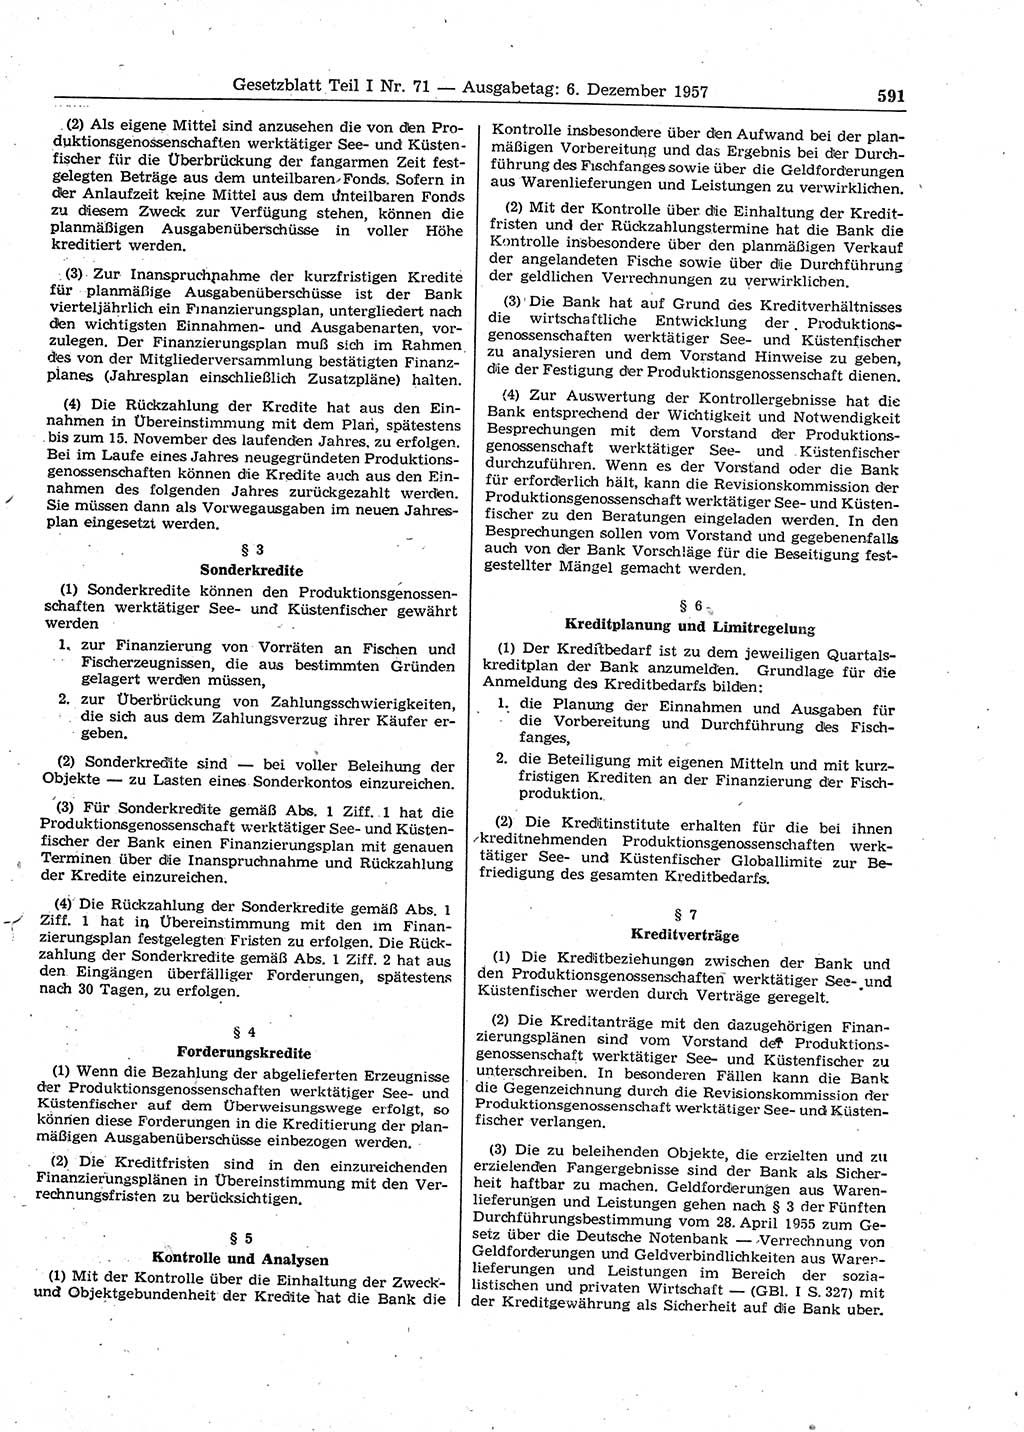 Gesetzblatt (GBl.) der Deutschen Demokratischen Republik (DDR) Teil Ⅰ 1957, Seite 591 (GBl. DDR Ⅰ 1957, S. 591)